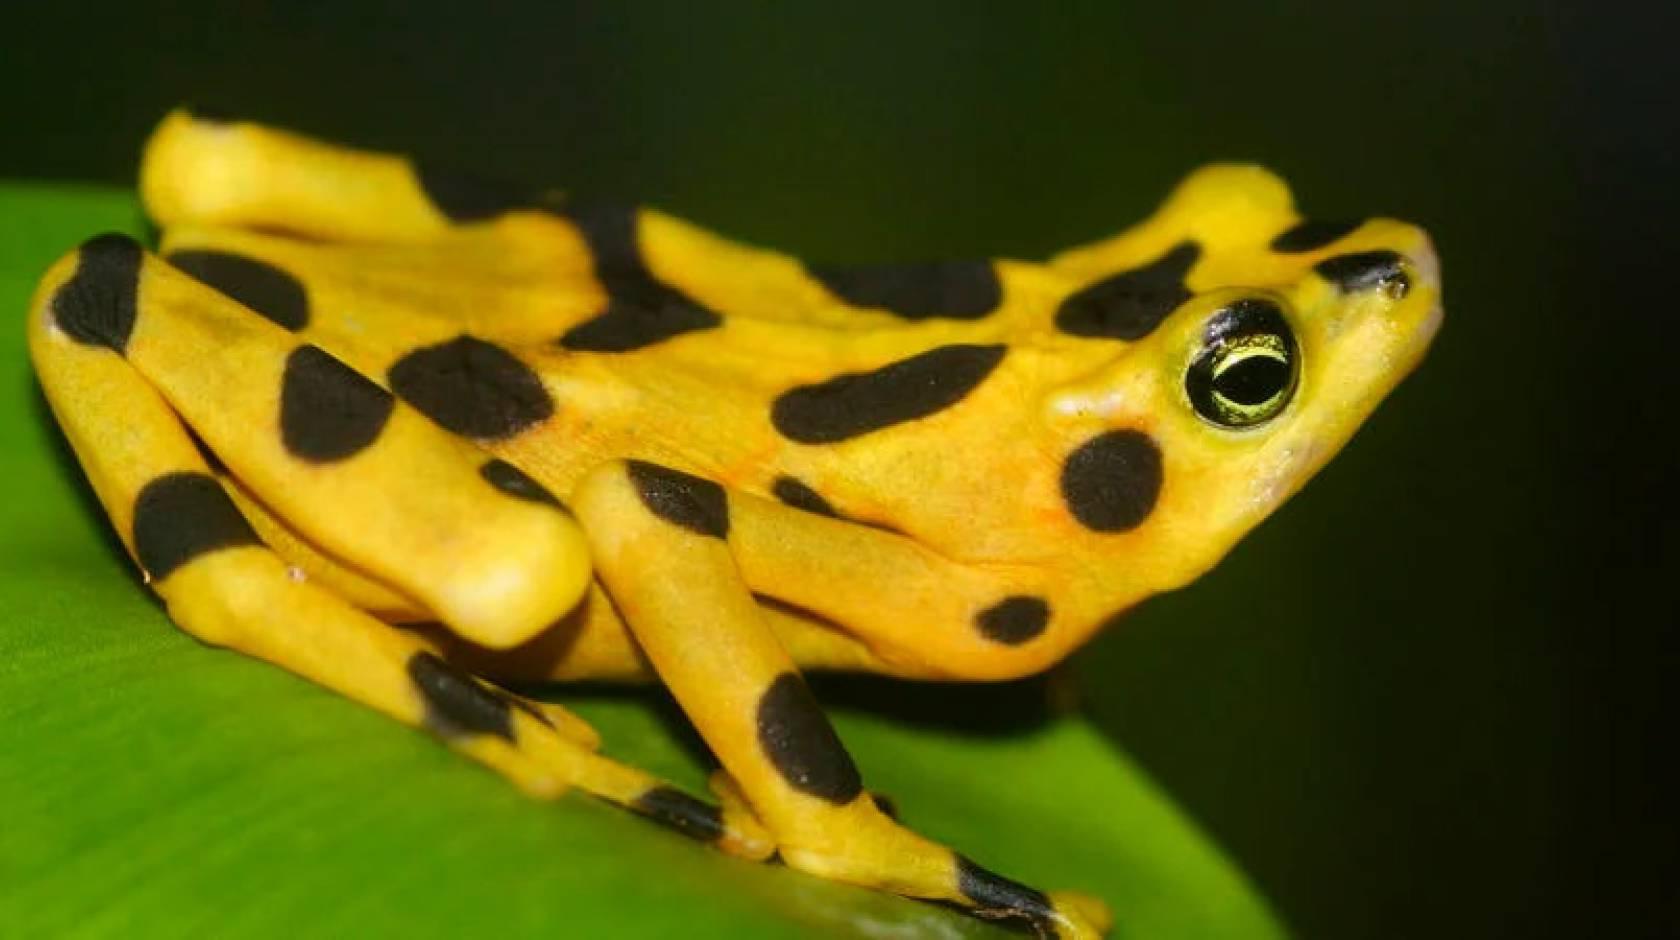 巴拿马金蛙, 上面有黑色的斑点和圆点, 闪亮的黄皮肤, 坐在一片叶子上